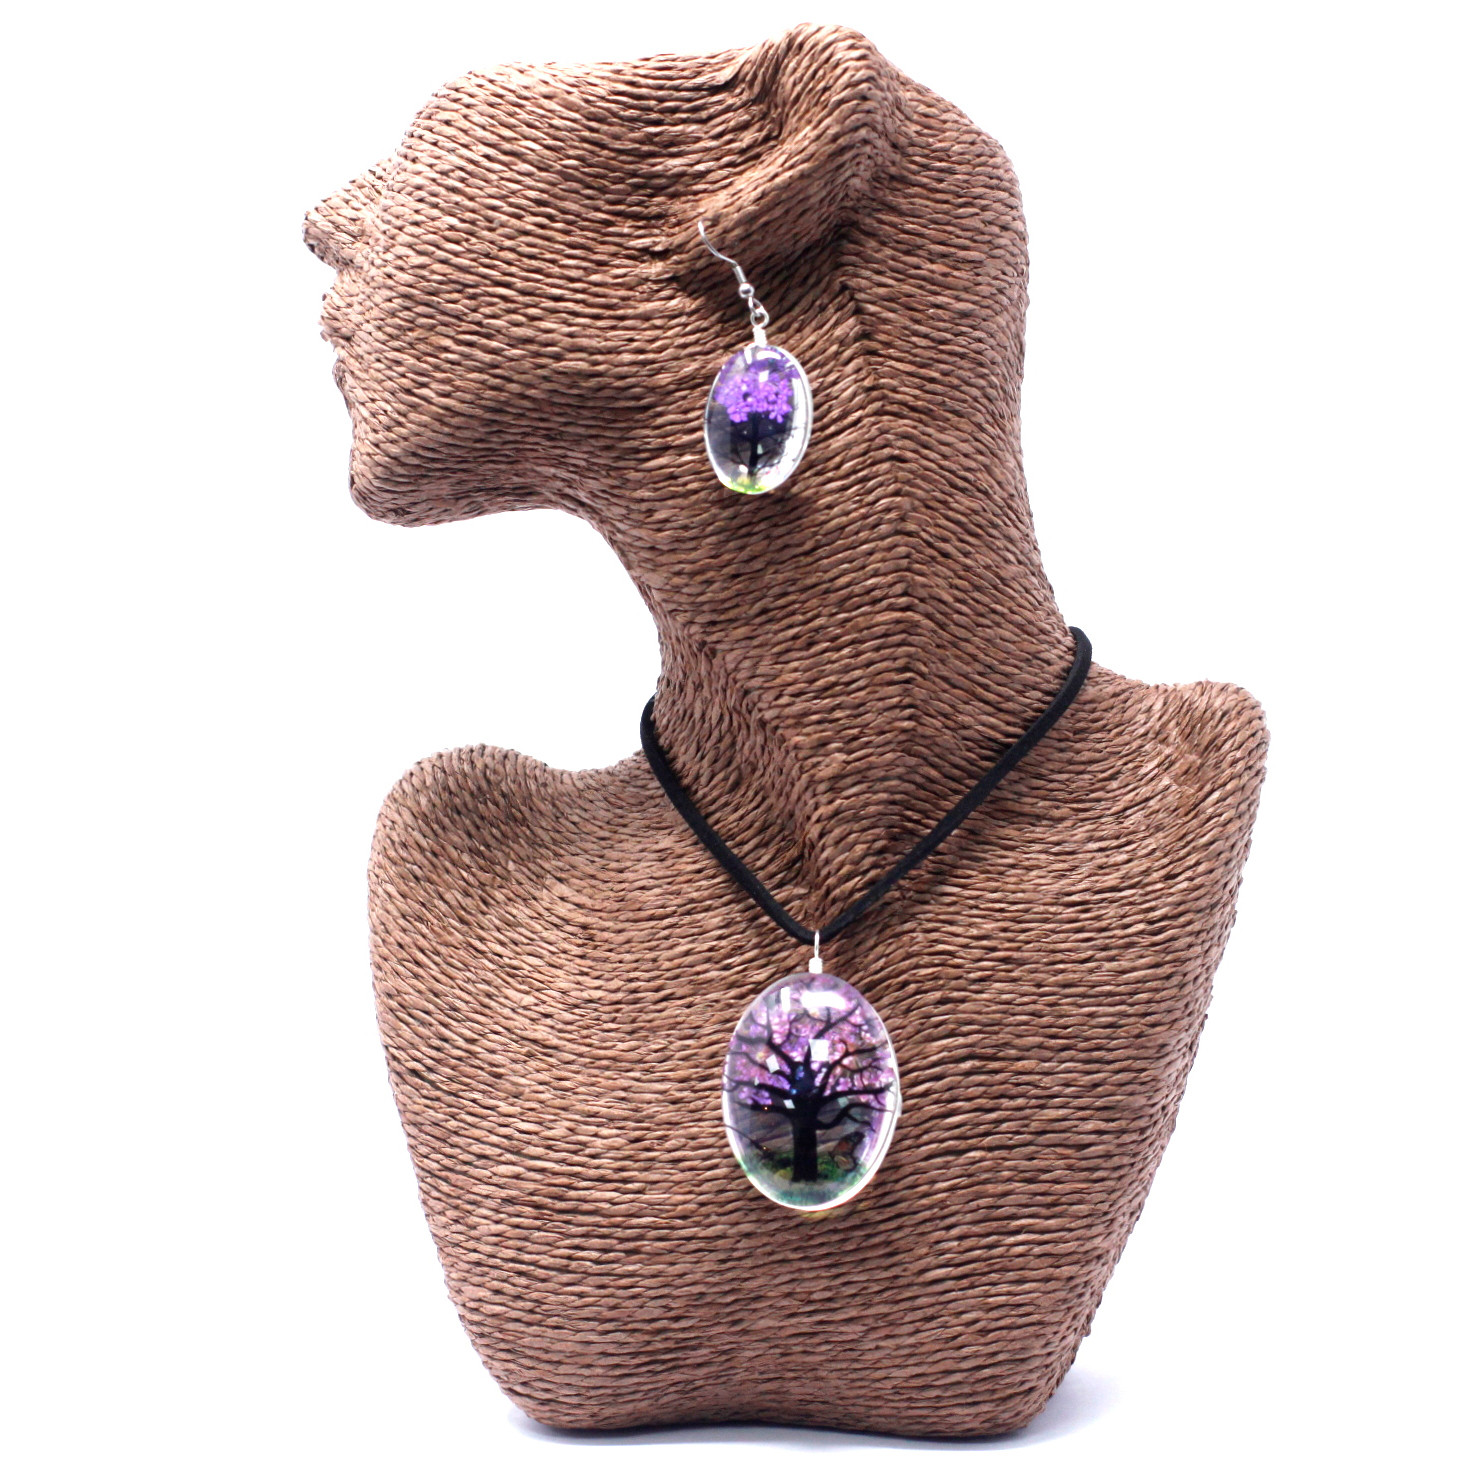 Pressed Flowers - Tree of Life set - Lavender